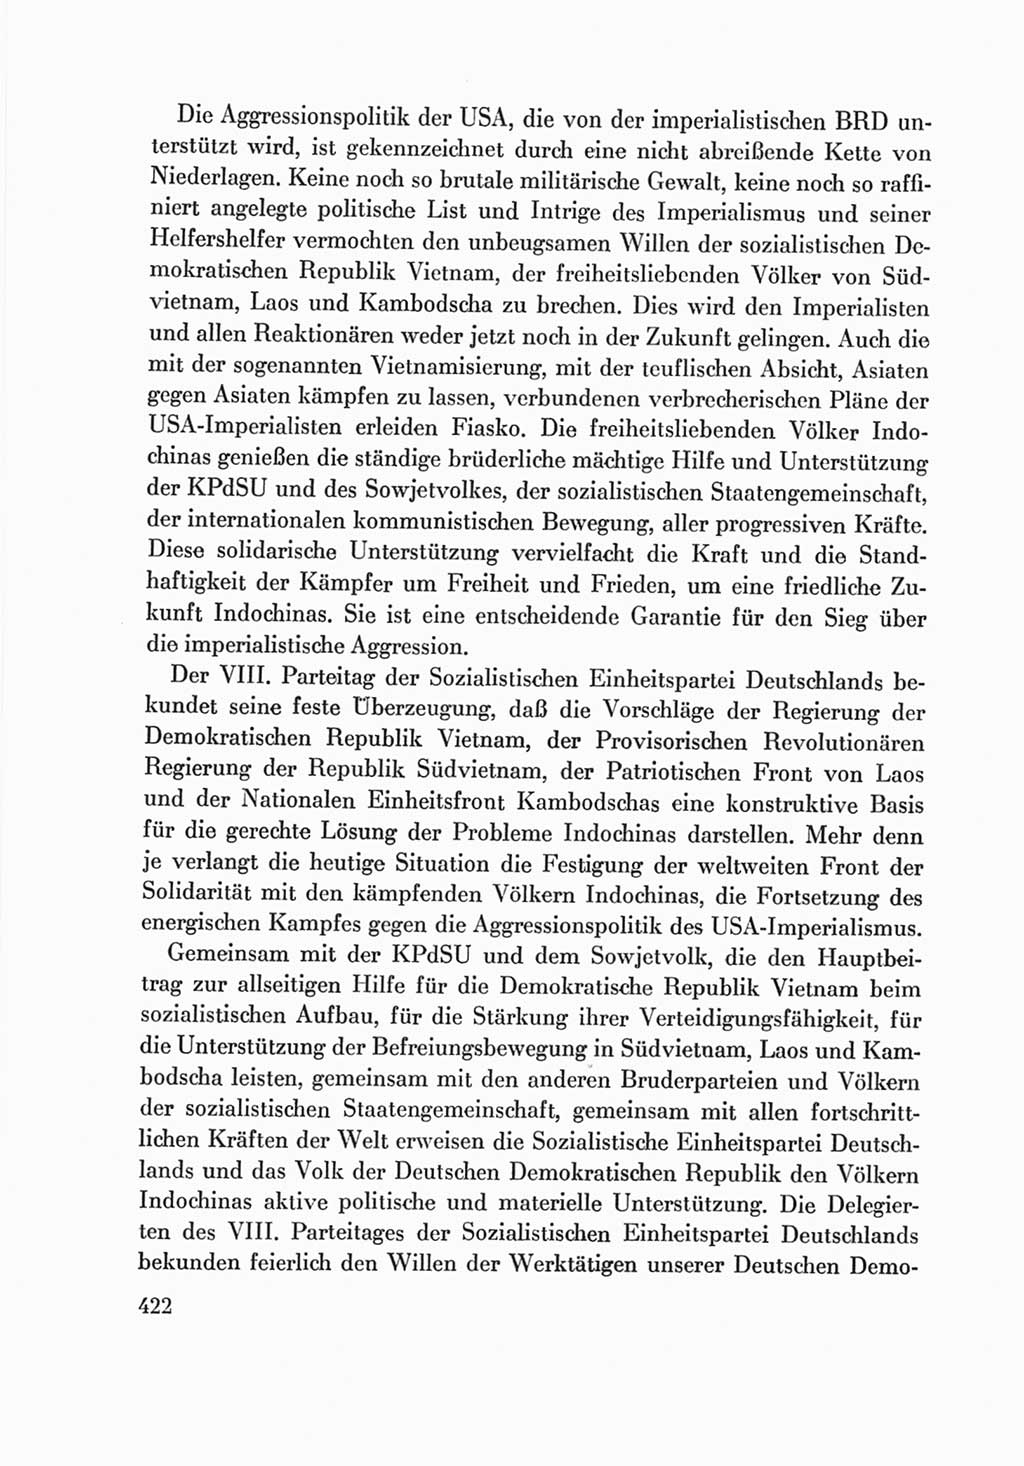 Protokoll der Verhandlungen des Ⅷ. Parteitages der Sozialistischen Einheitspartei Deutschlands (SED) [Deutsche Demokratische Republik (DDR)] 1971, Band 2, Seite 422 (Prot. Verh. Ⅷ. PT SED DDR 1971, Bd. 2, S. 422)